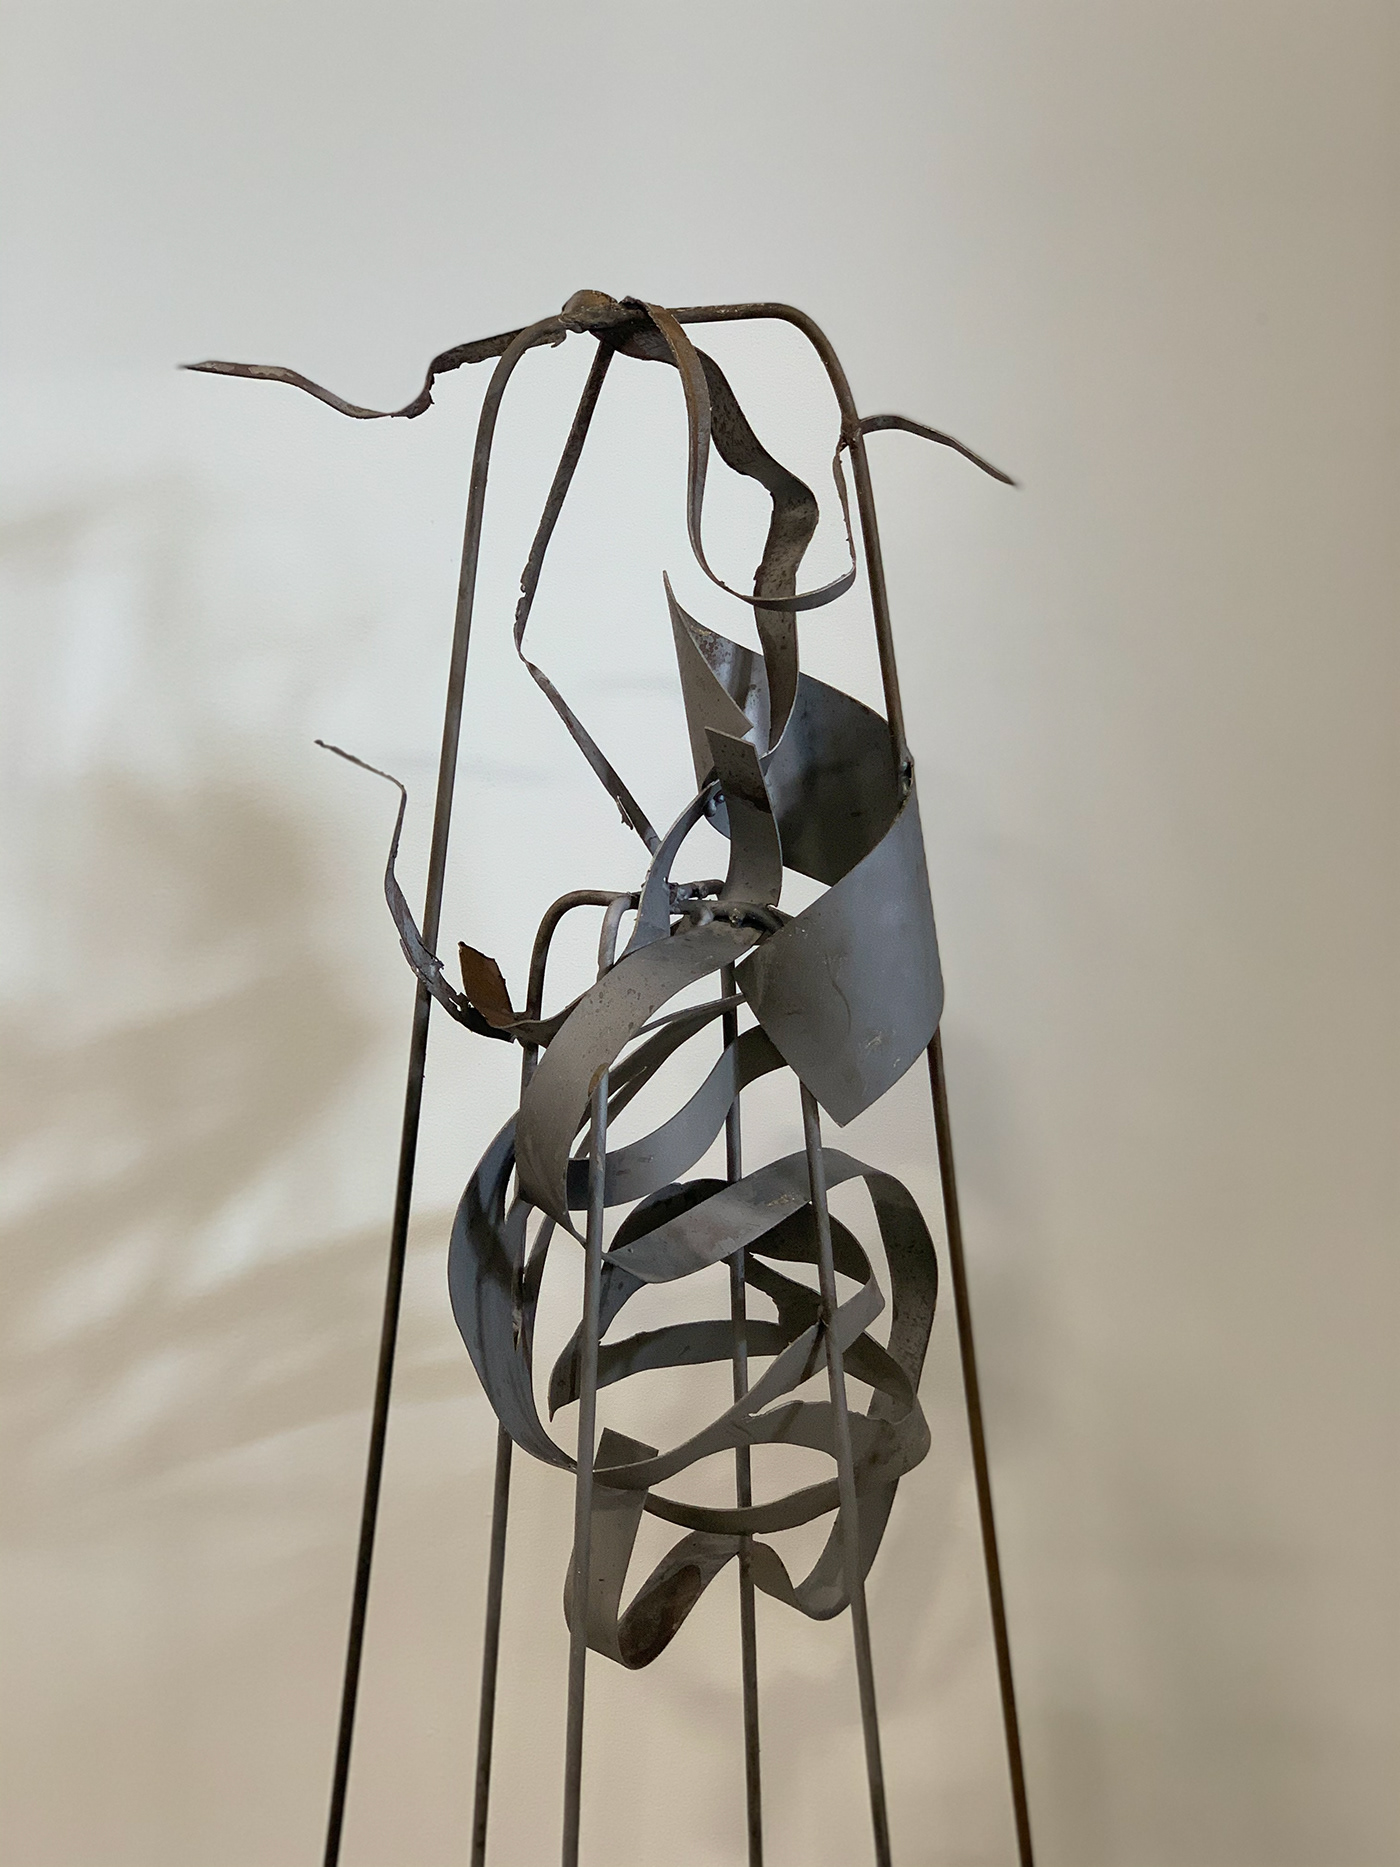 abstract sculpture art sculpture steel